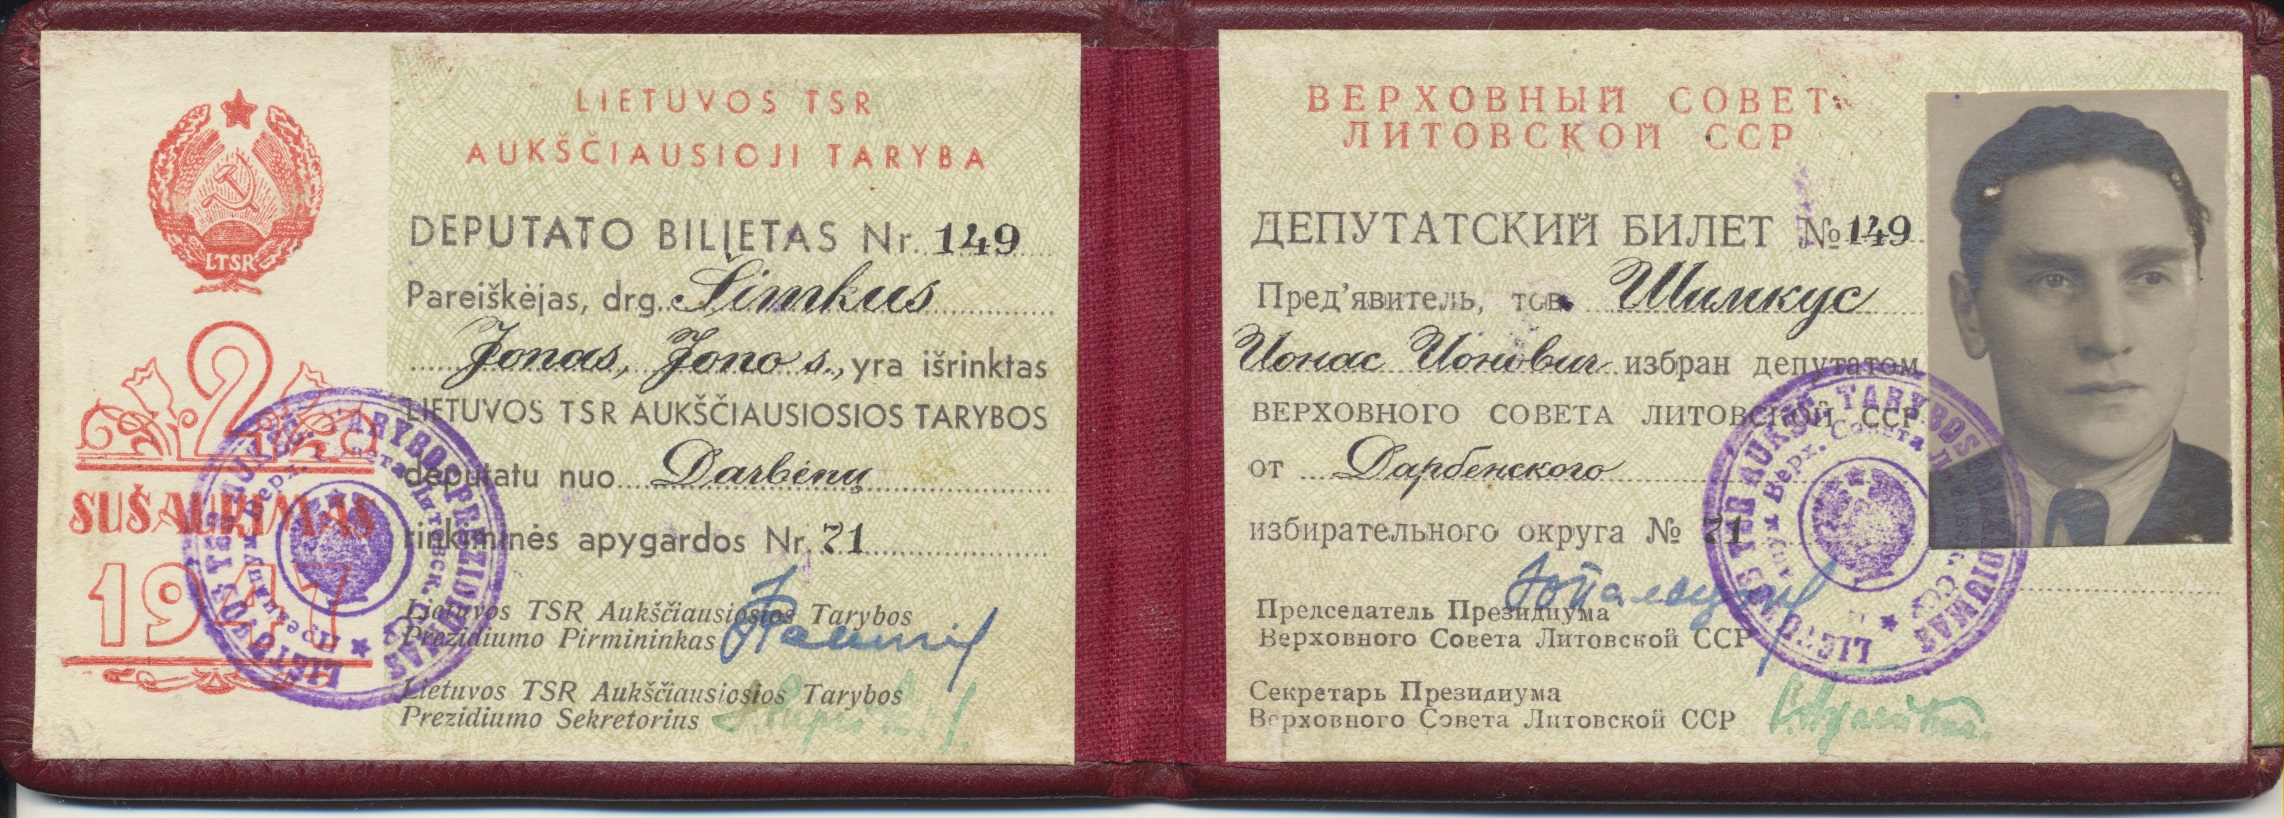 J. Šimkaus Lietuvos TSR aukščiausios tarybos deputato bilietas. 1947 m.